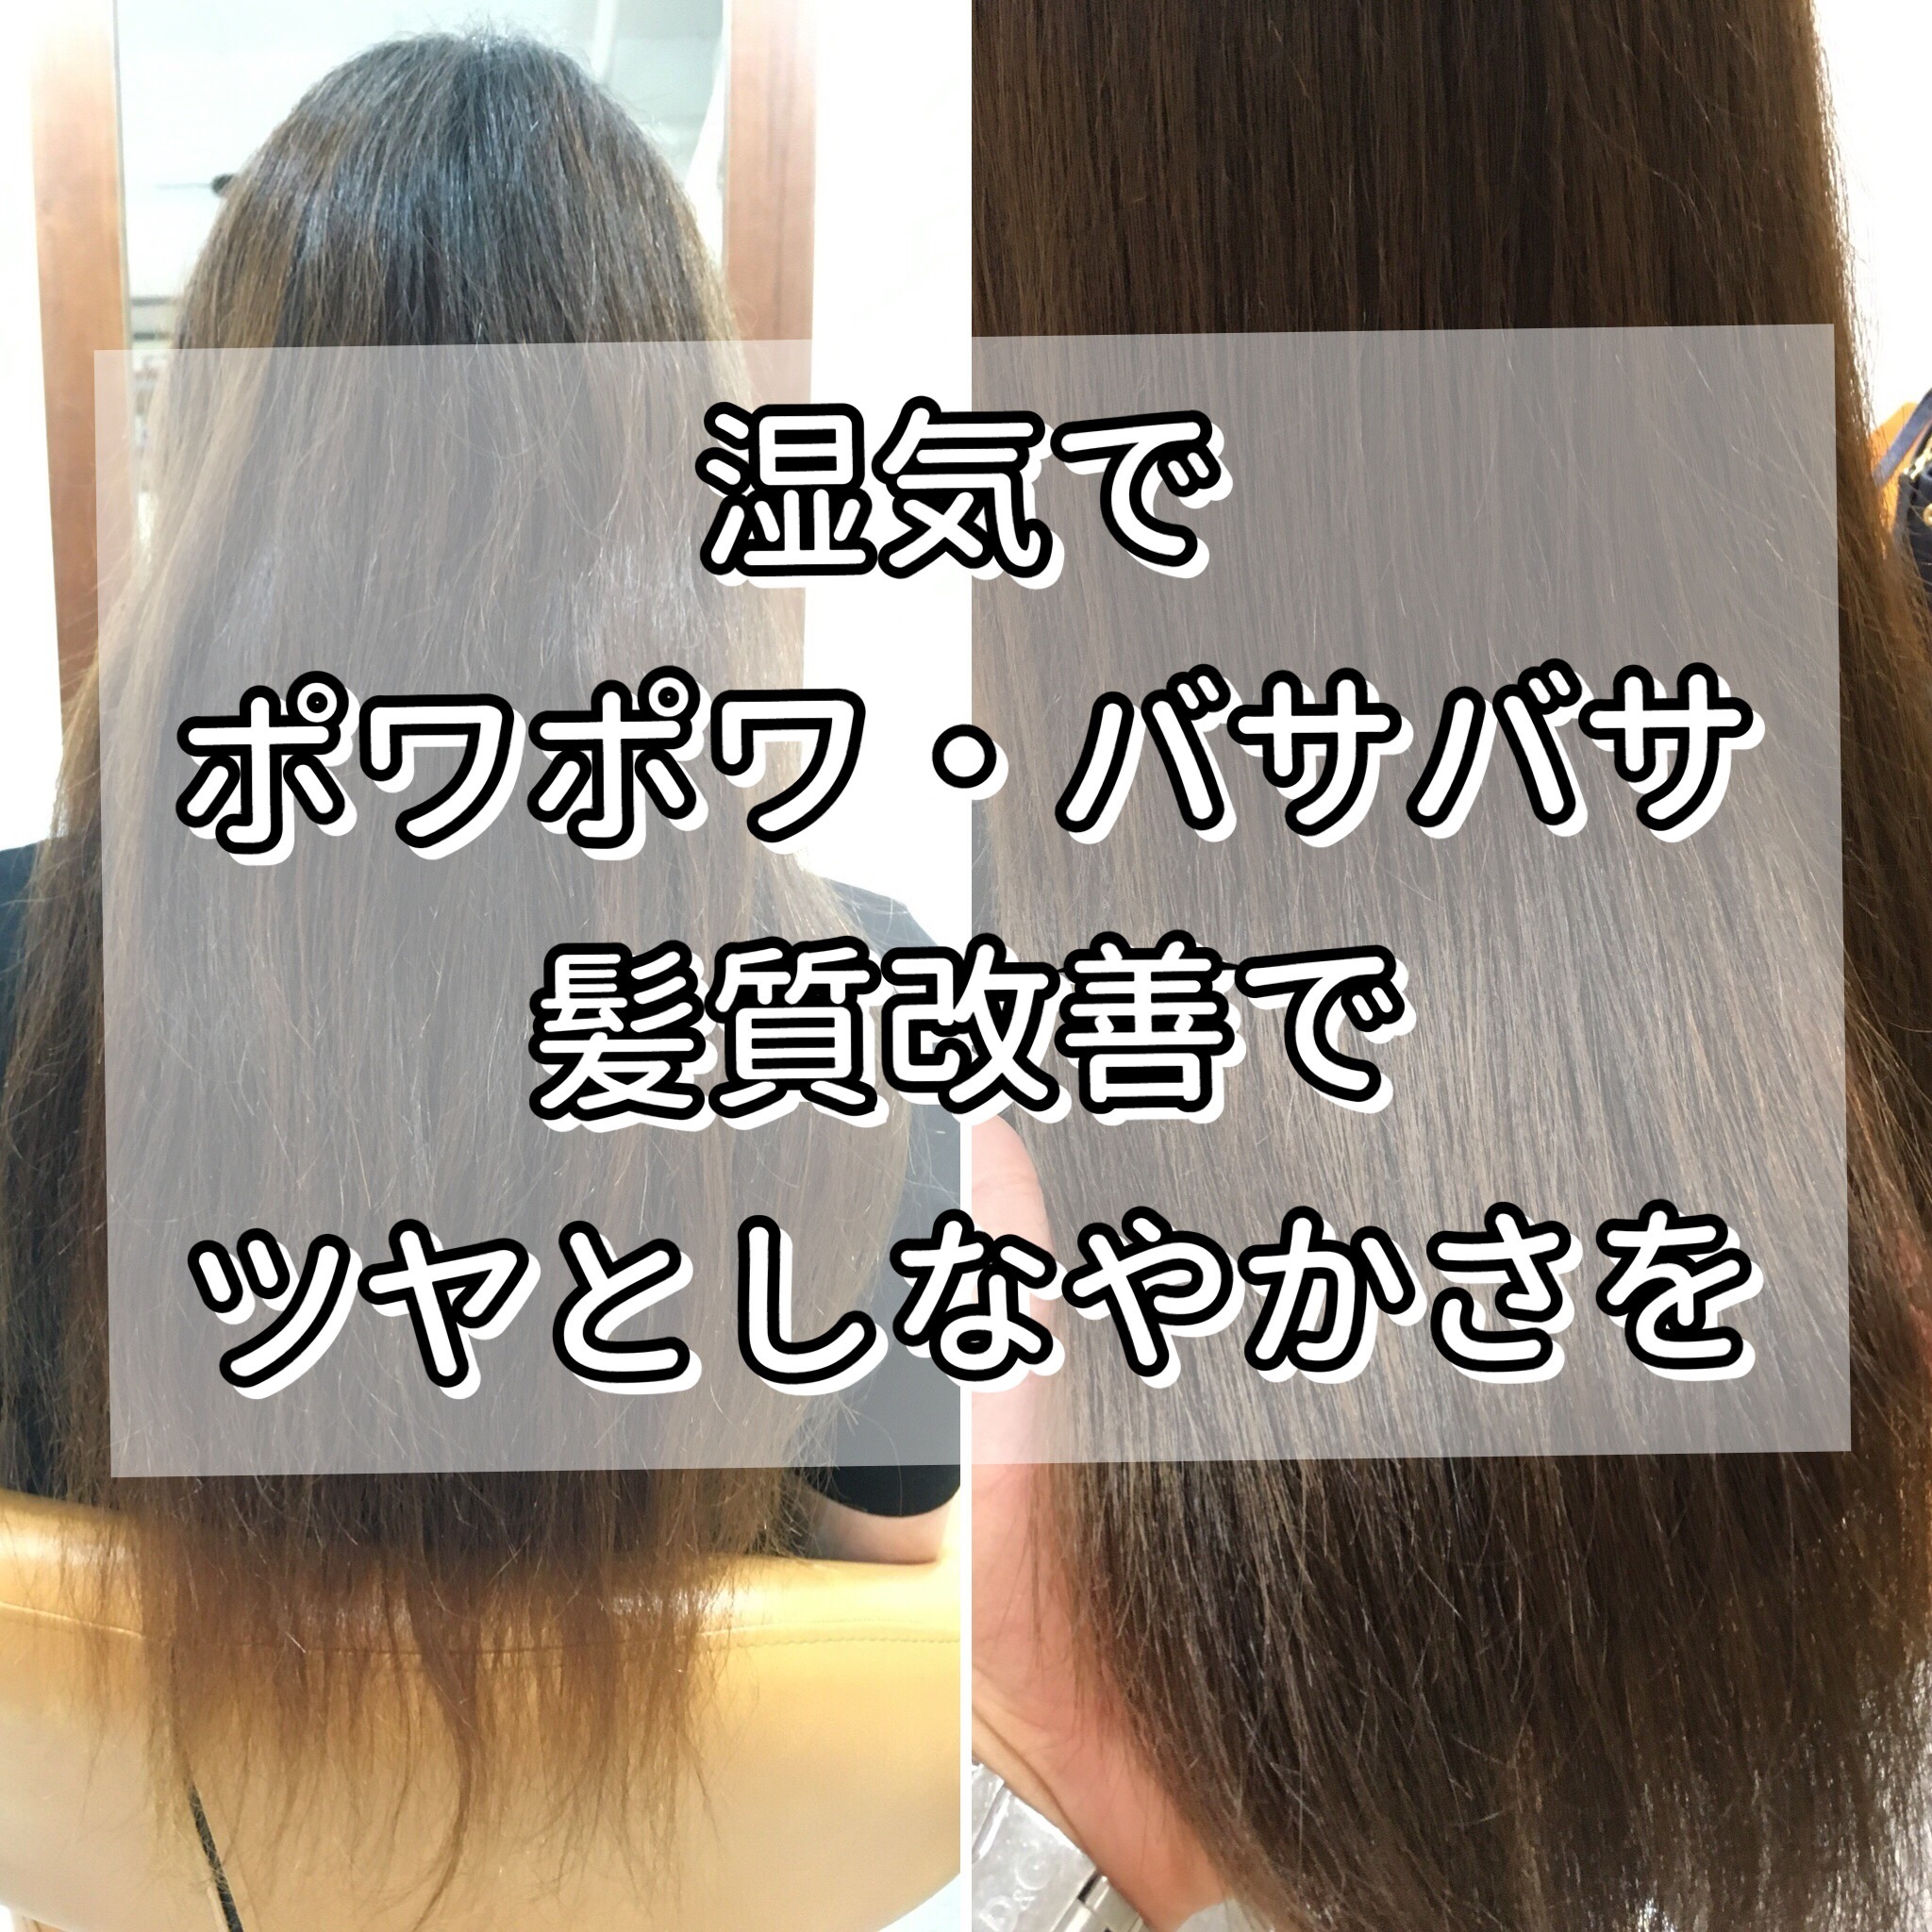 埼玉 志木 パヤパヤ パサパサする髪に 髪質改善でまとまる髪に Ikoi Relax Hair Room